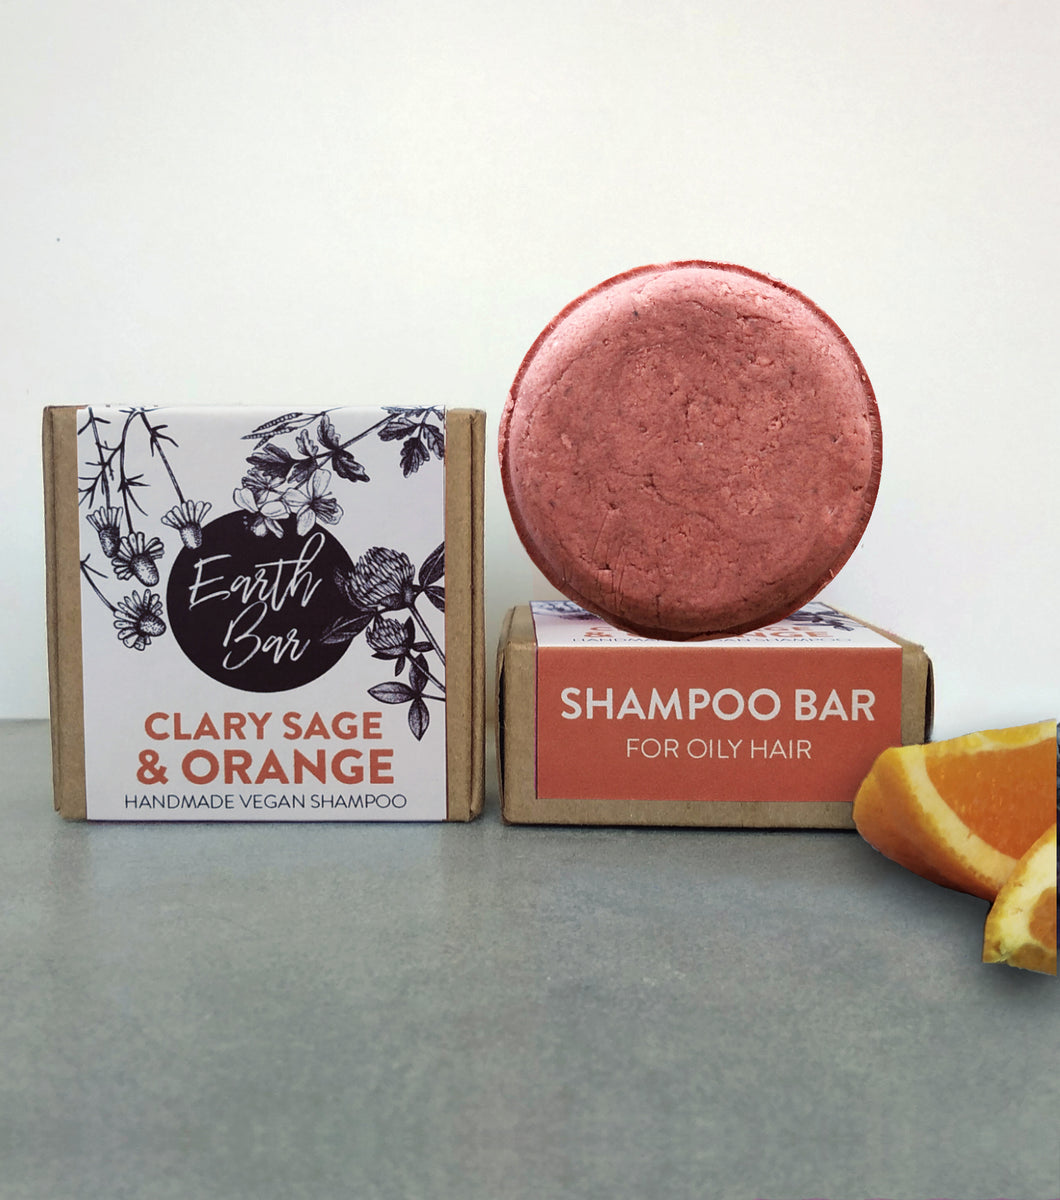 Clary Sage & Orange Shampoo Bar - For Oily Hair